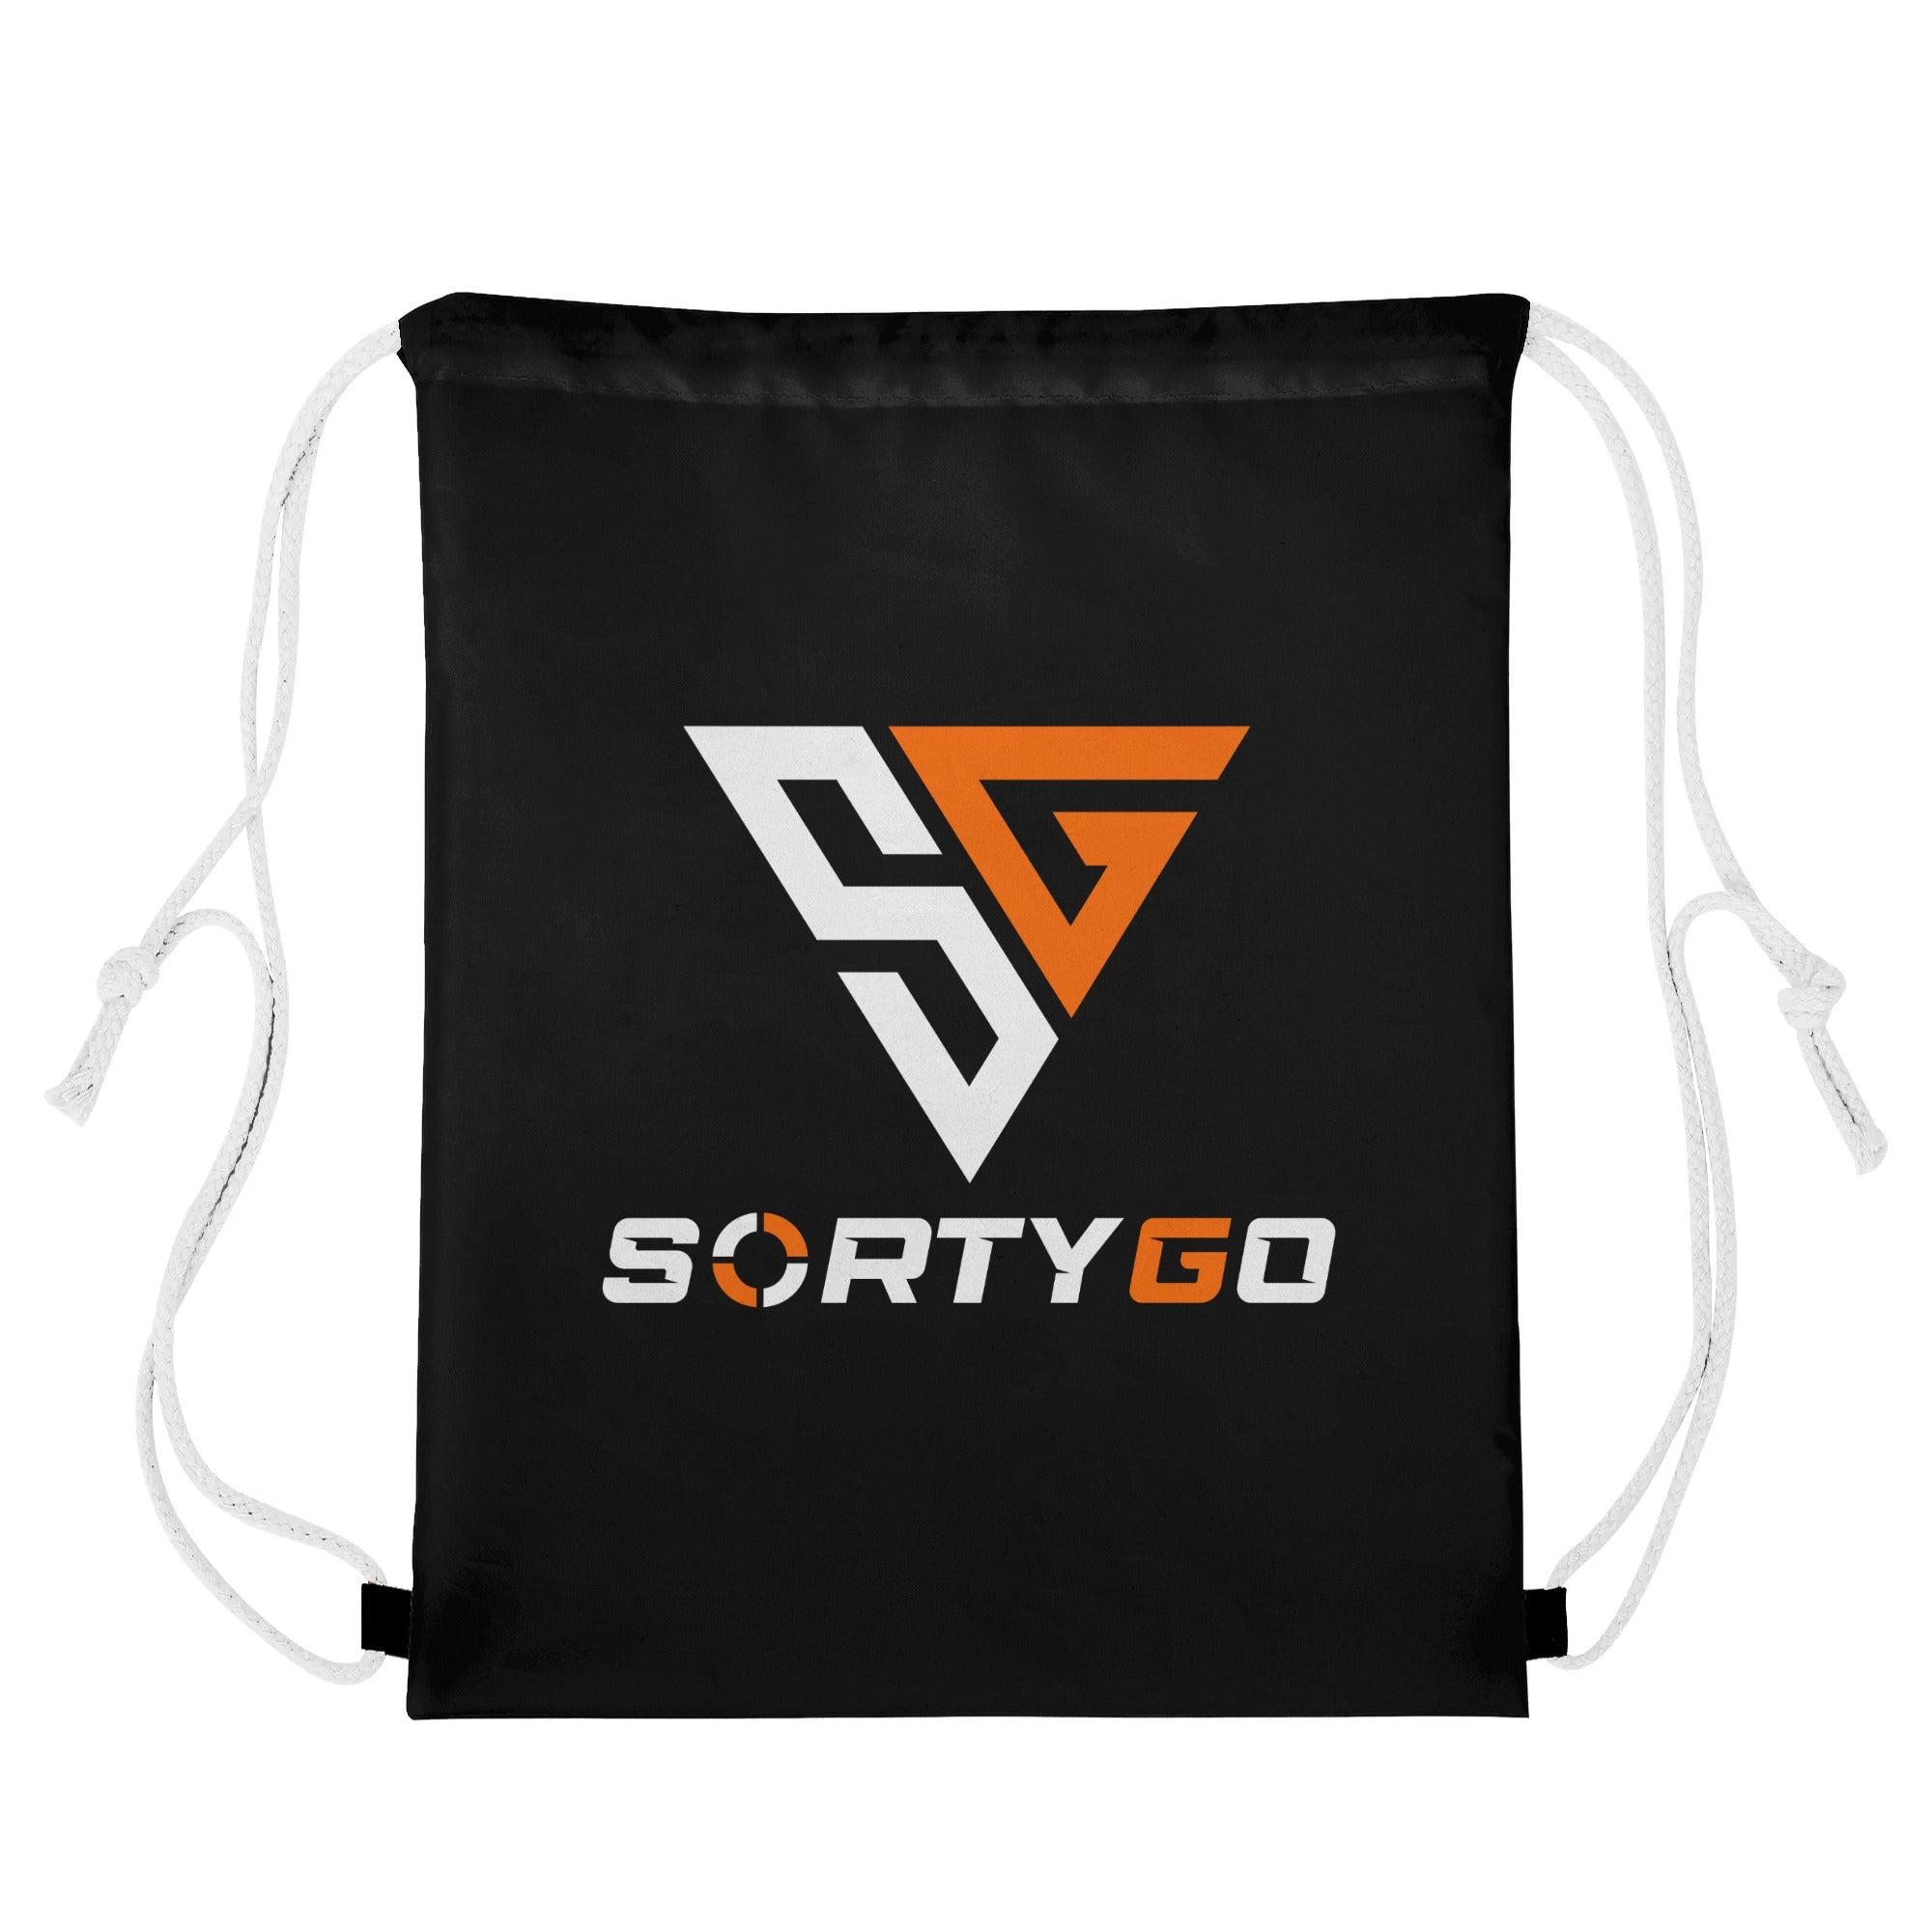 SORTYGO - Smorgasbord Drawstring Bag in